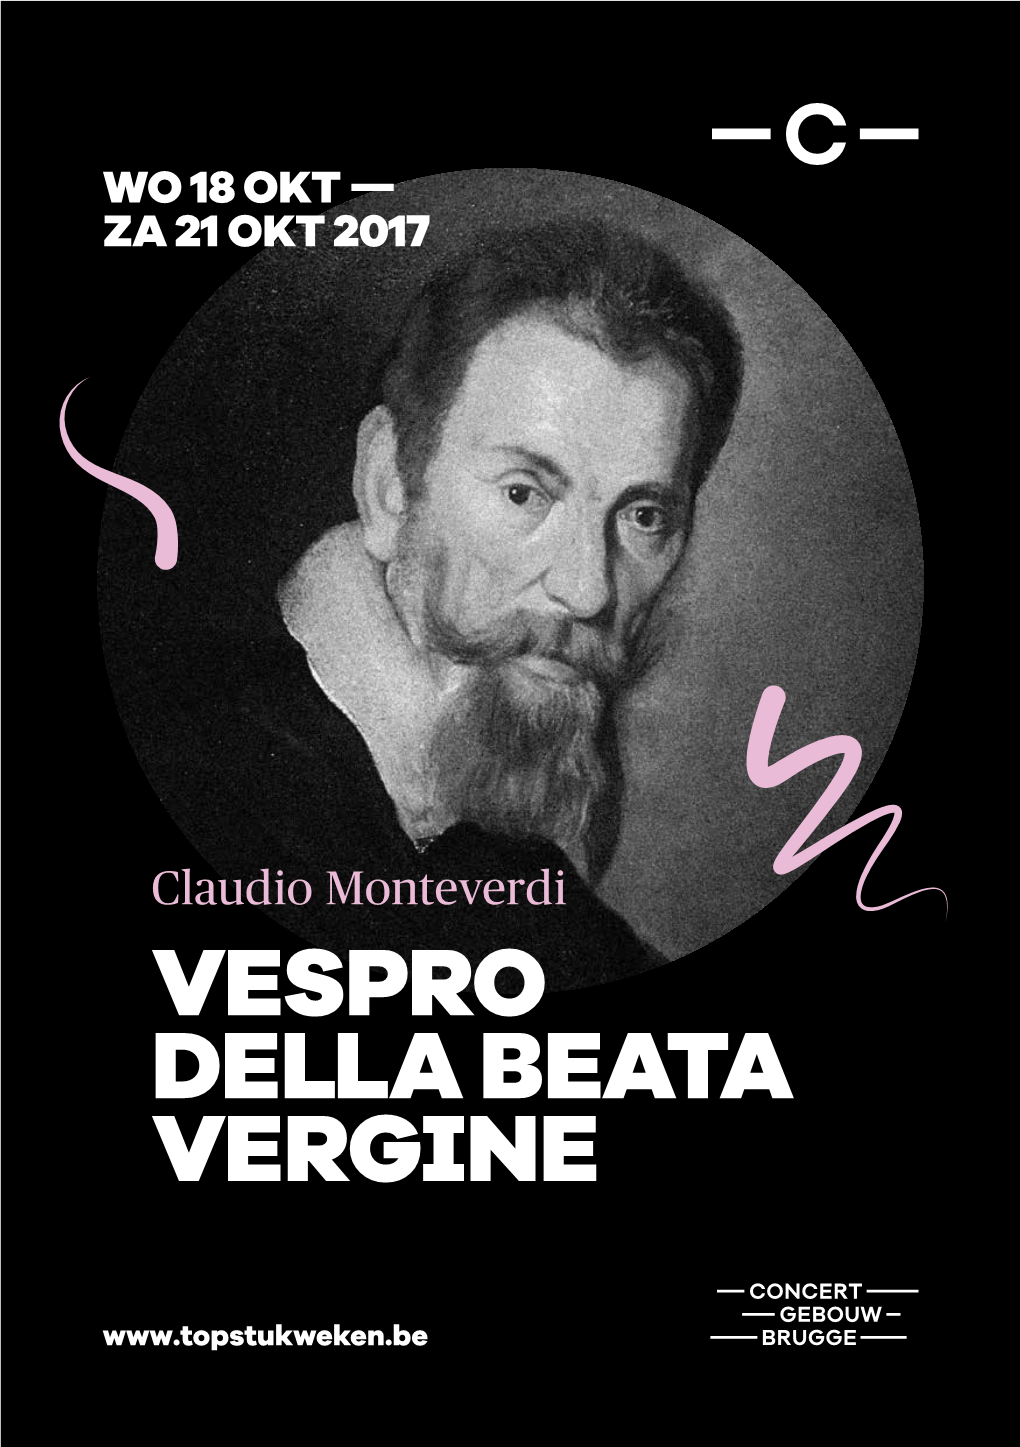 Download Het Programmaboekje Van Topstukweek Monteverdi